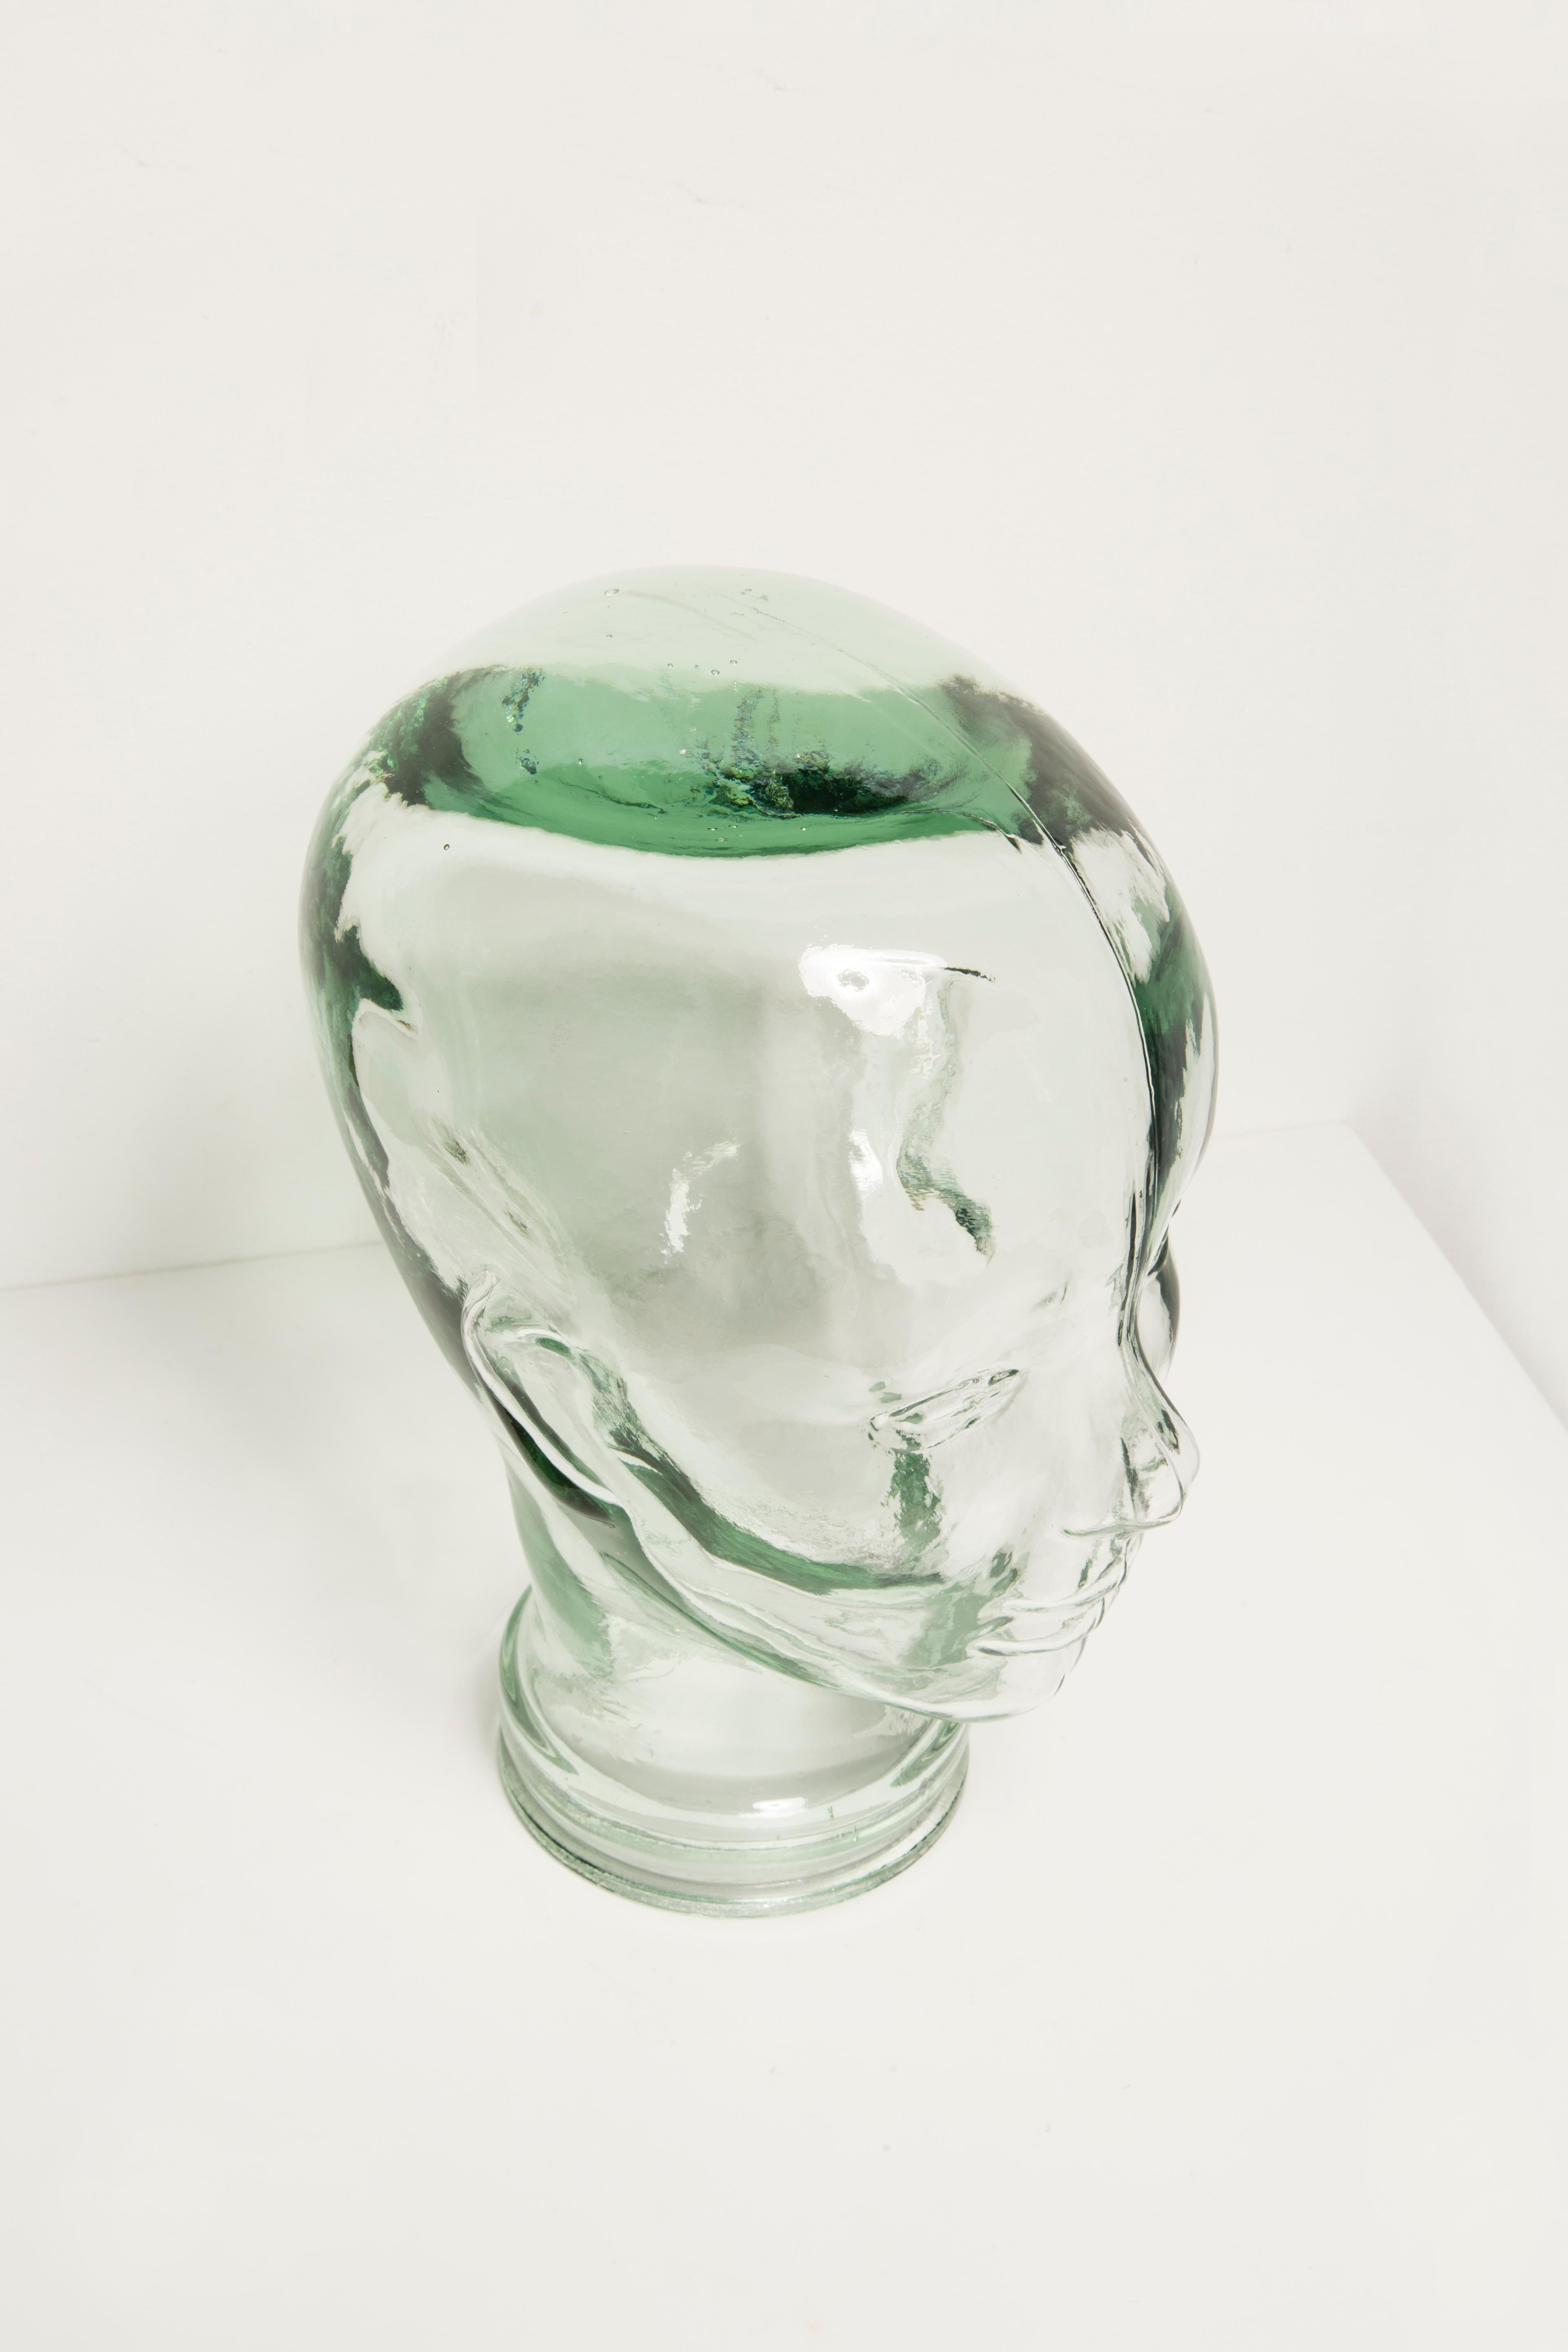 Transparent Vintage Decorative Mannequin Glass Head Sculpture, 1970s, Germany For Sale 3